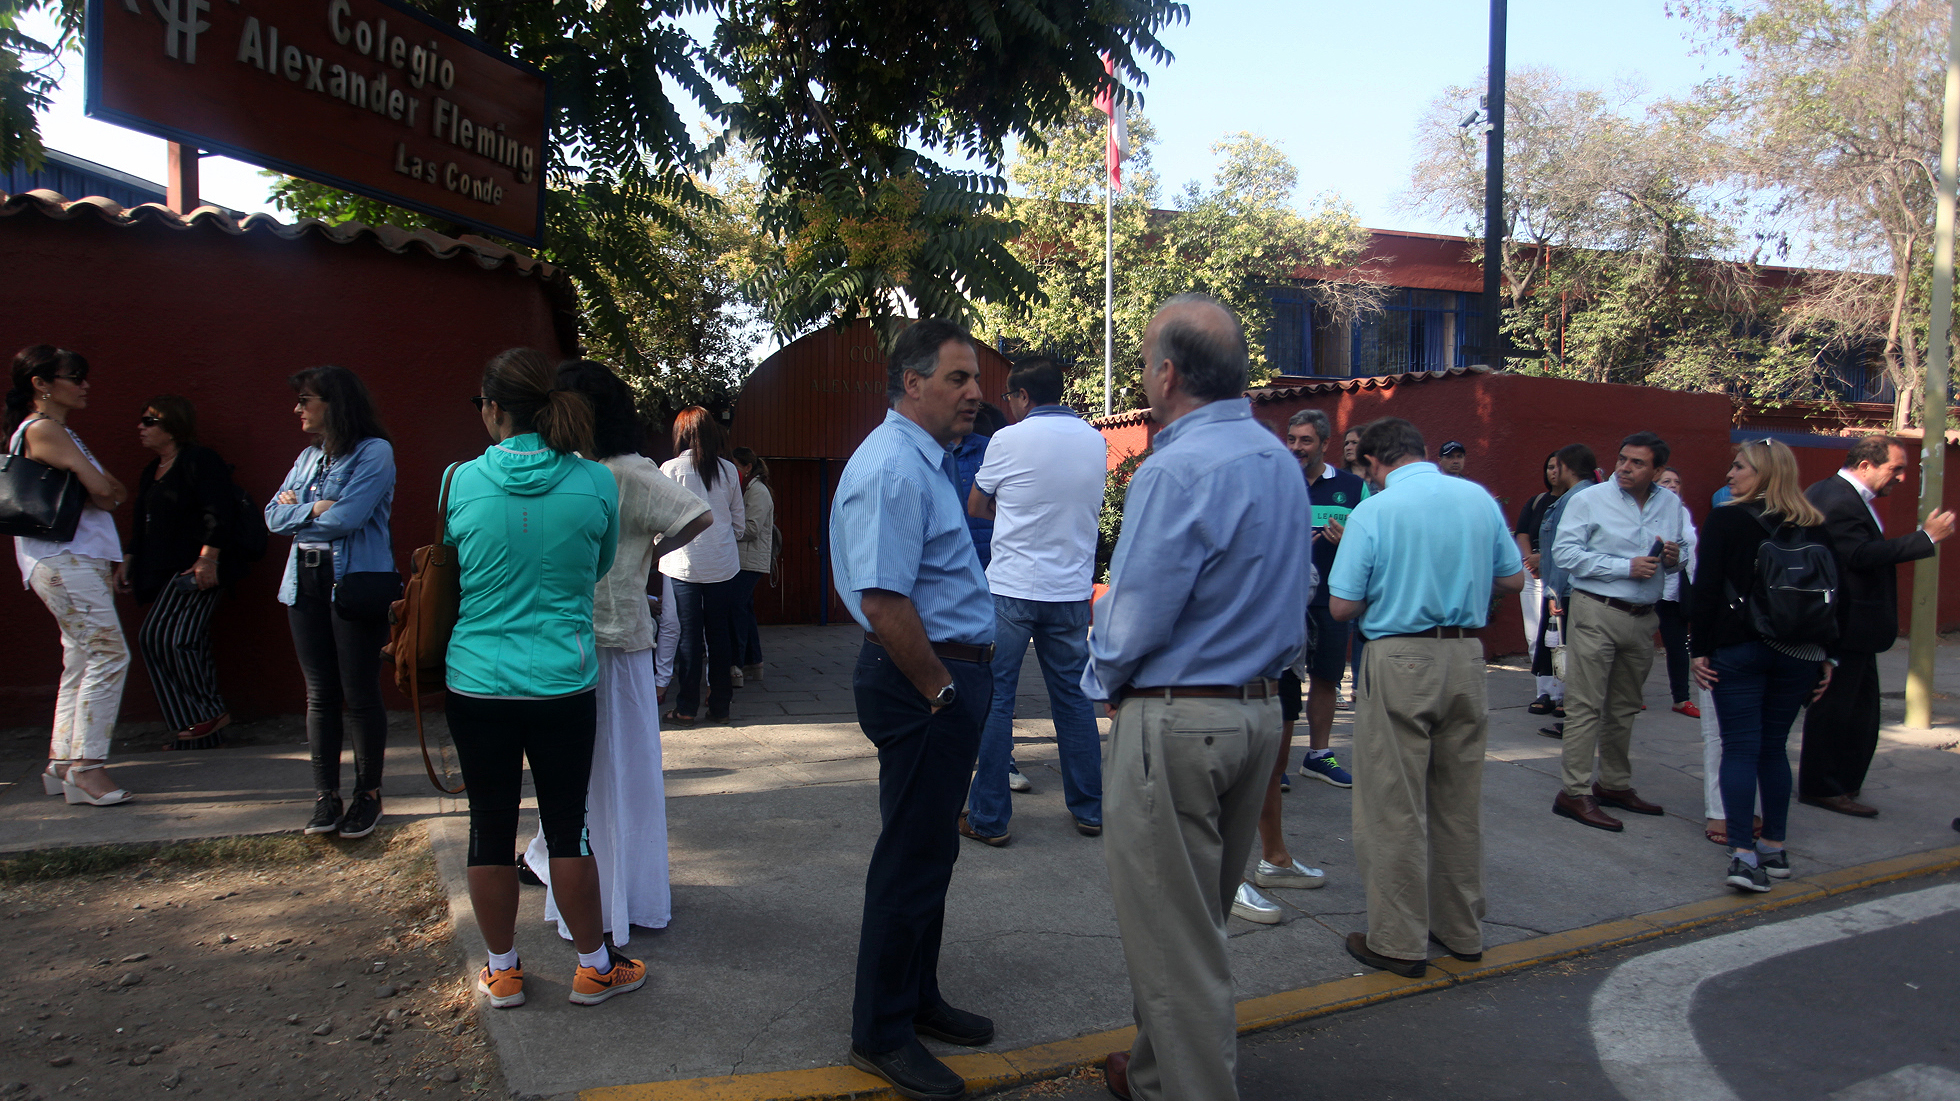 Apoderados llegaron esta mañana a locales de rendición de la PSU: Algunos portaban chalecos amarillos